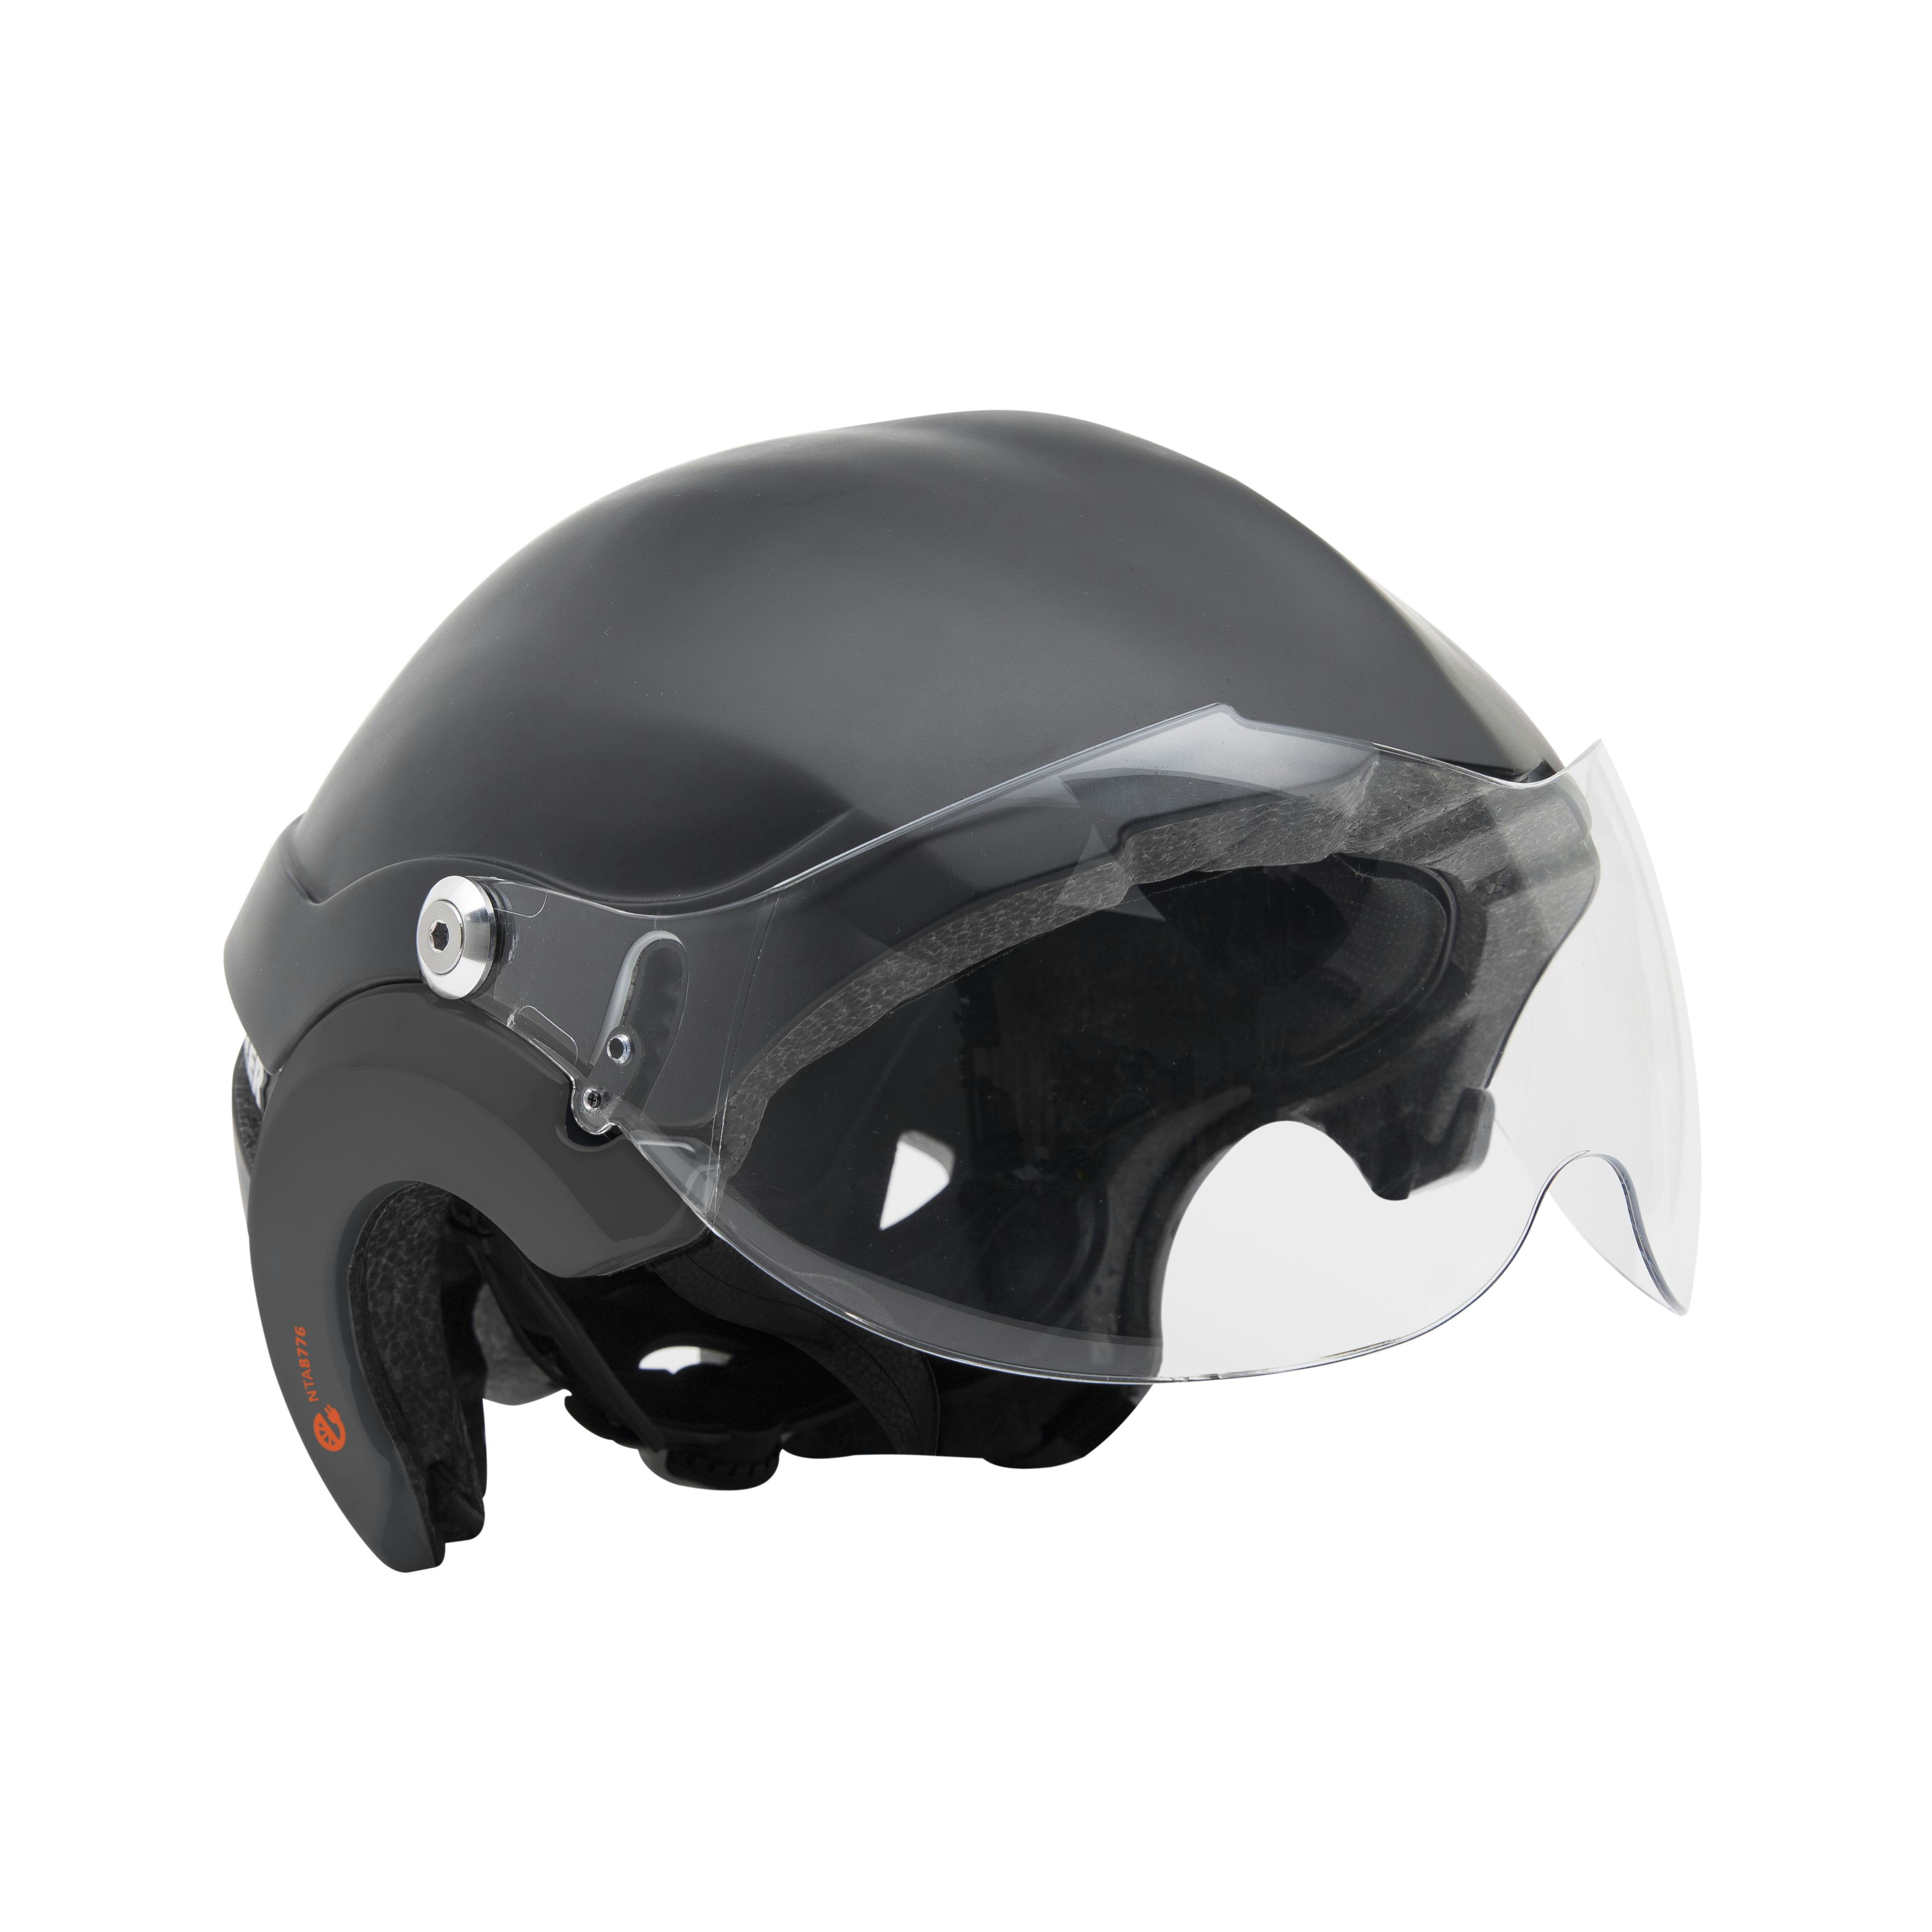 uitroepen Winkelcentrum Injectie Lazer's Latest Speed Pedelec Dedicated Helmets